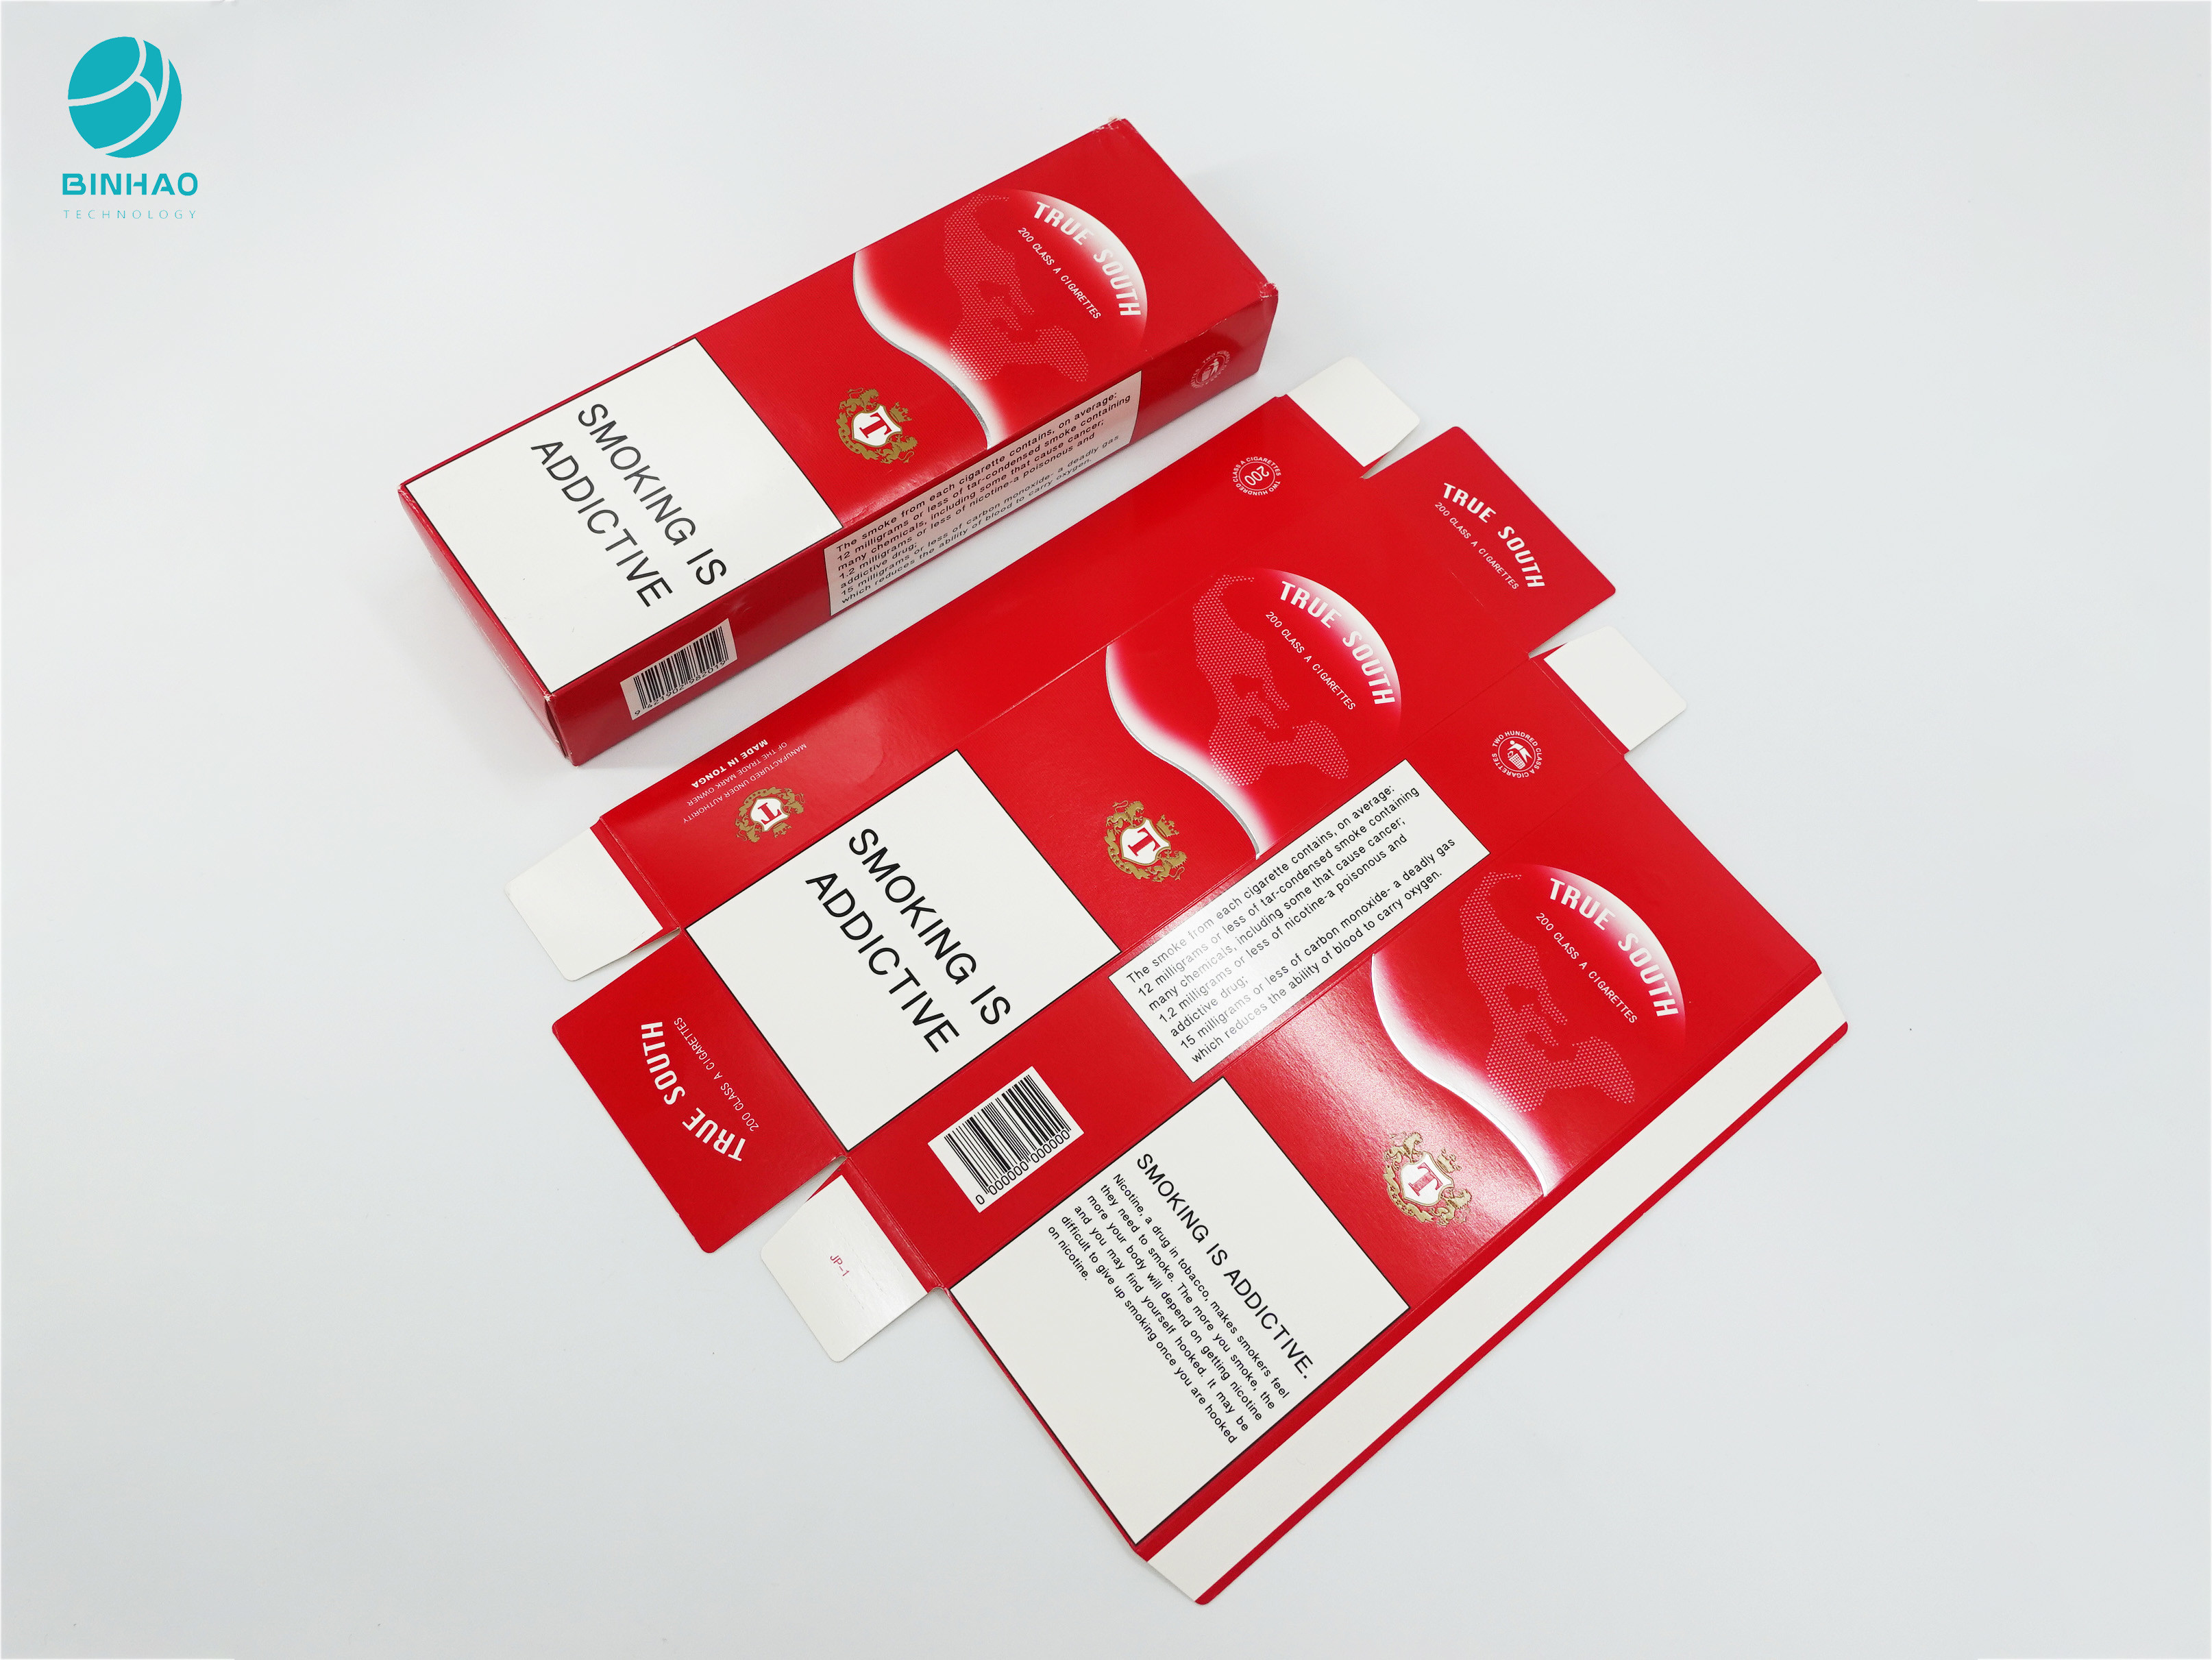 Casos de embalagem decorativos do cartão da cor vermelha para produtos de cigarro do cigarro